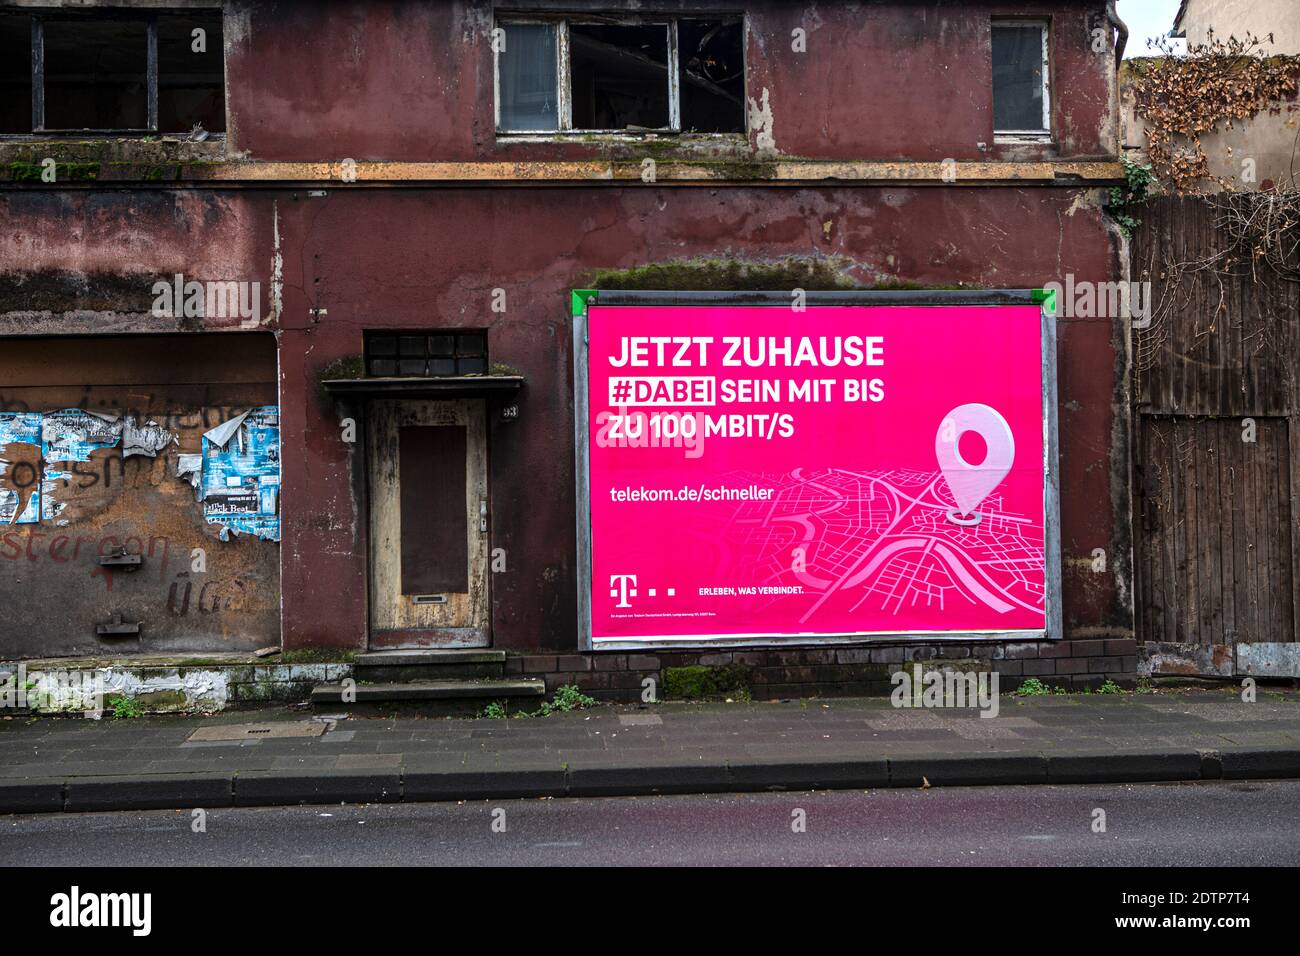 Reklame an Trümmerhäusern in Duisburg. Die Telekom wirbt mit 'jetzt zuhause' , wo kein zu hause mehr ist. Stock Photo